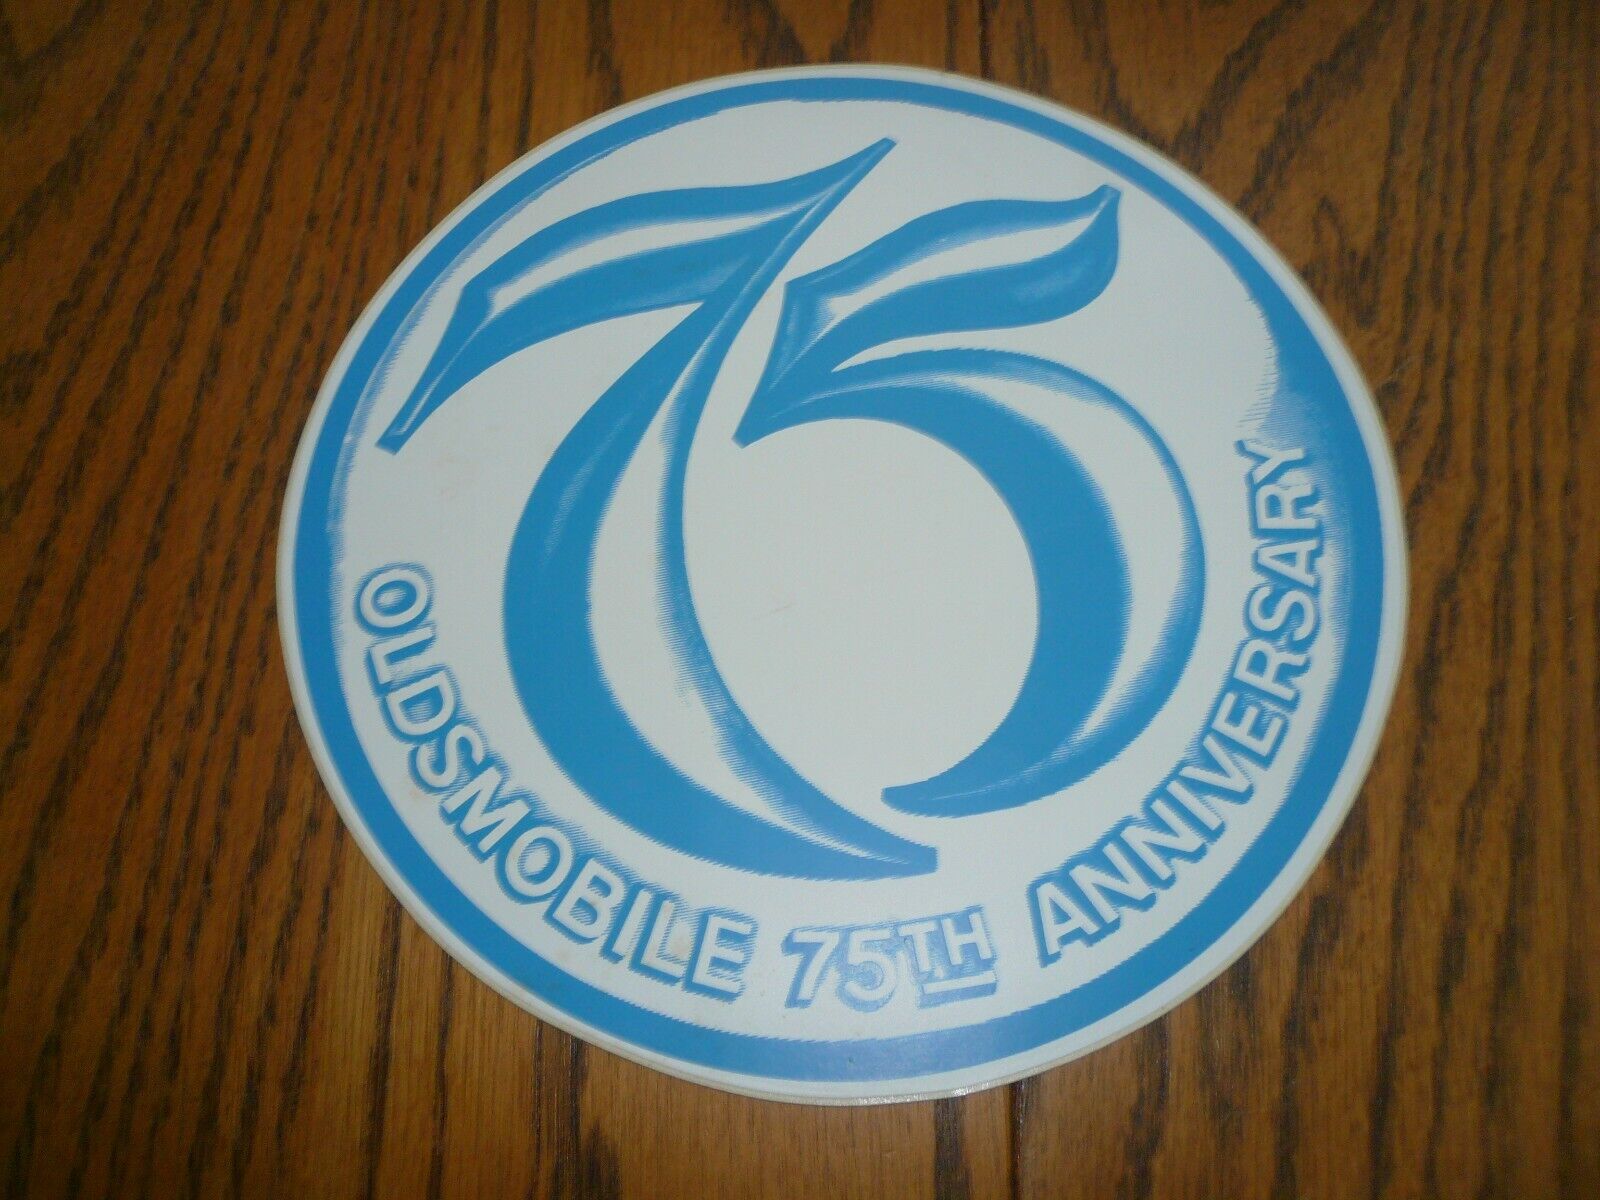 1972 Oldsmobile 75th Anniversary Sticker - Original